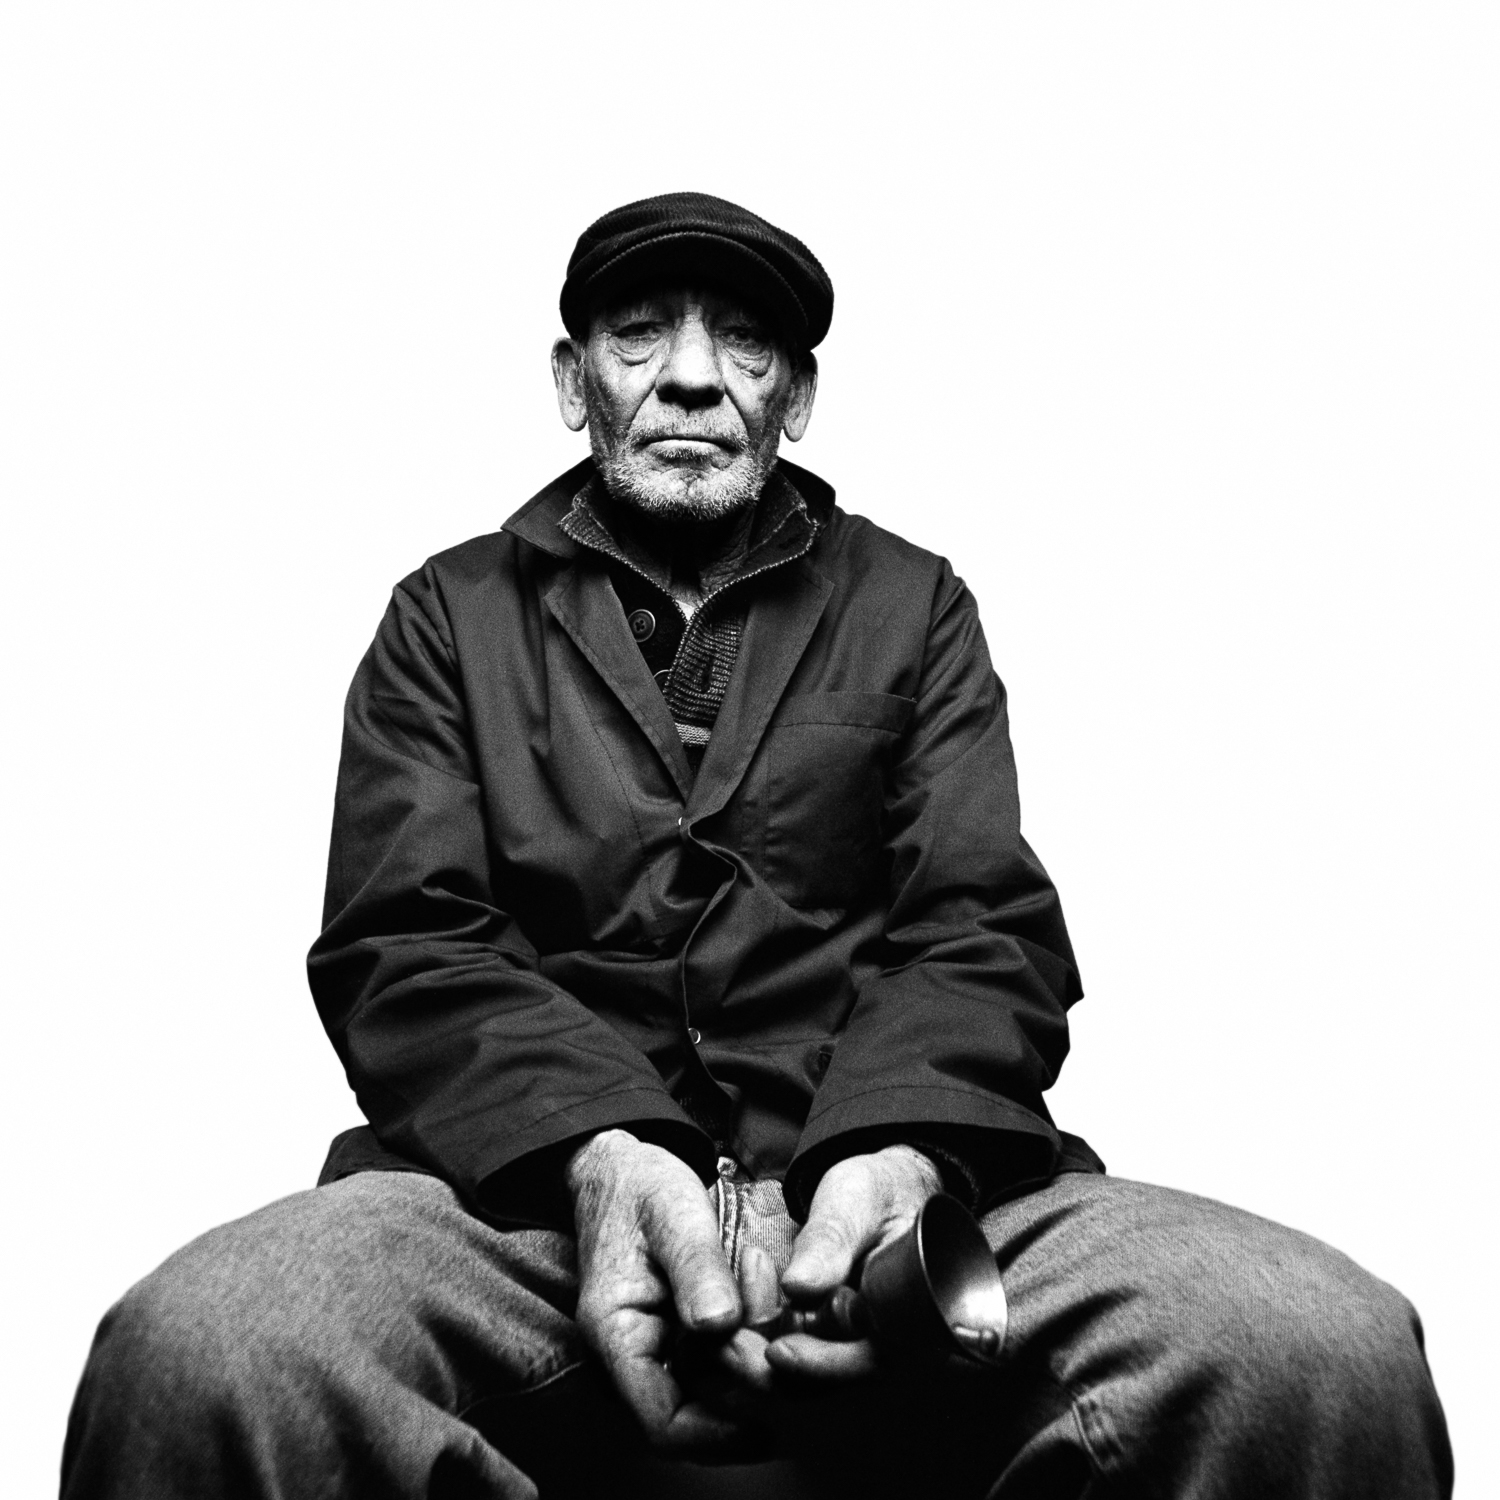 photographe portrait artistique argentique homme